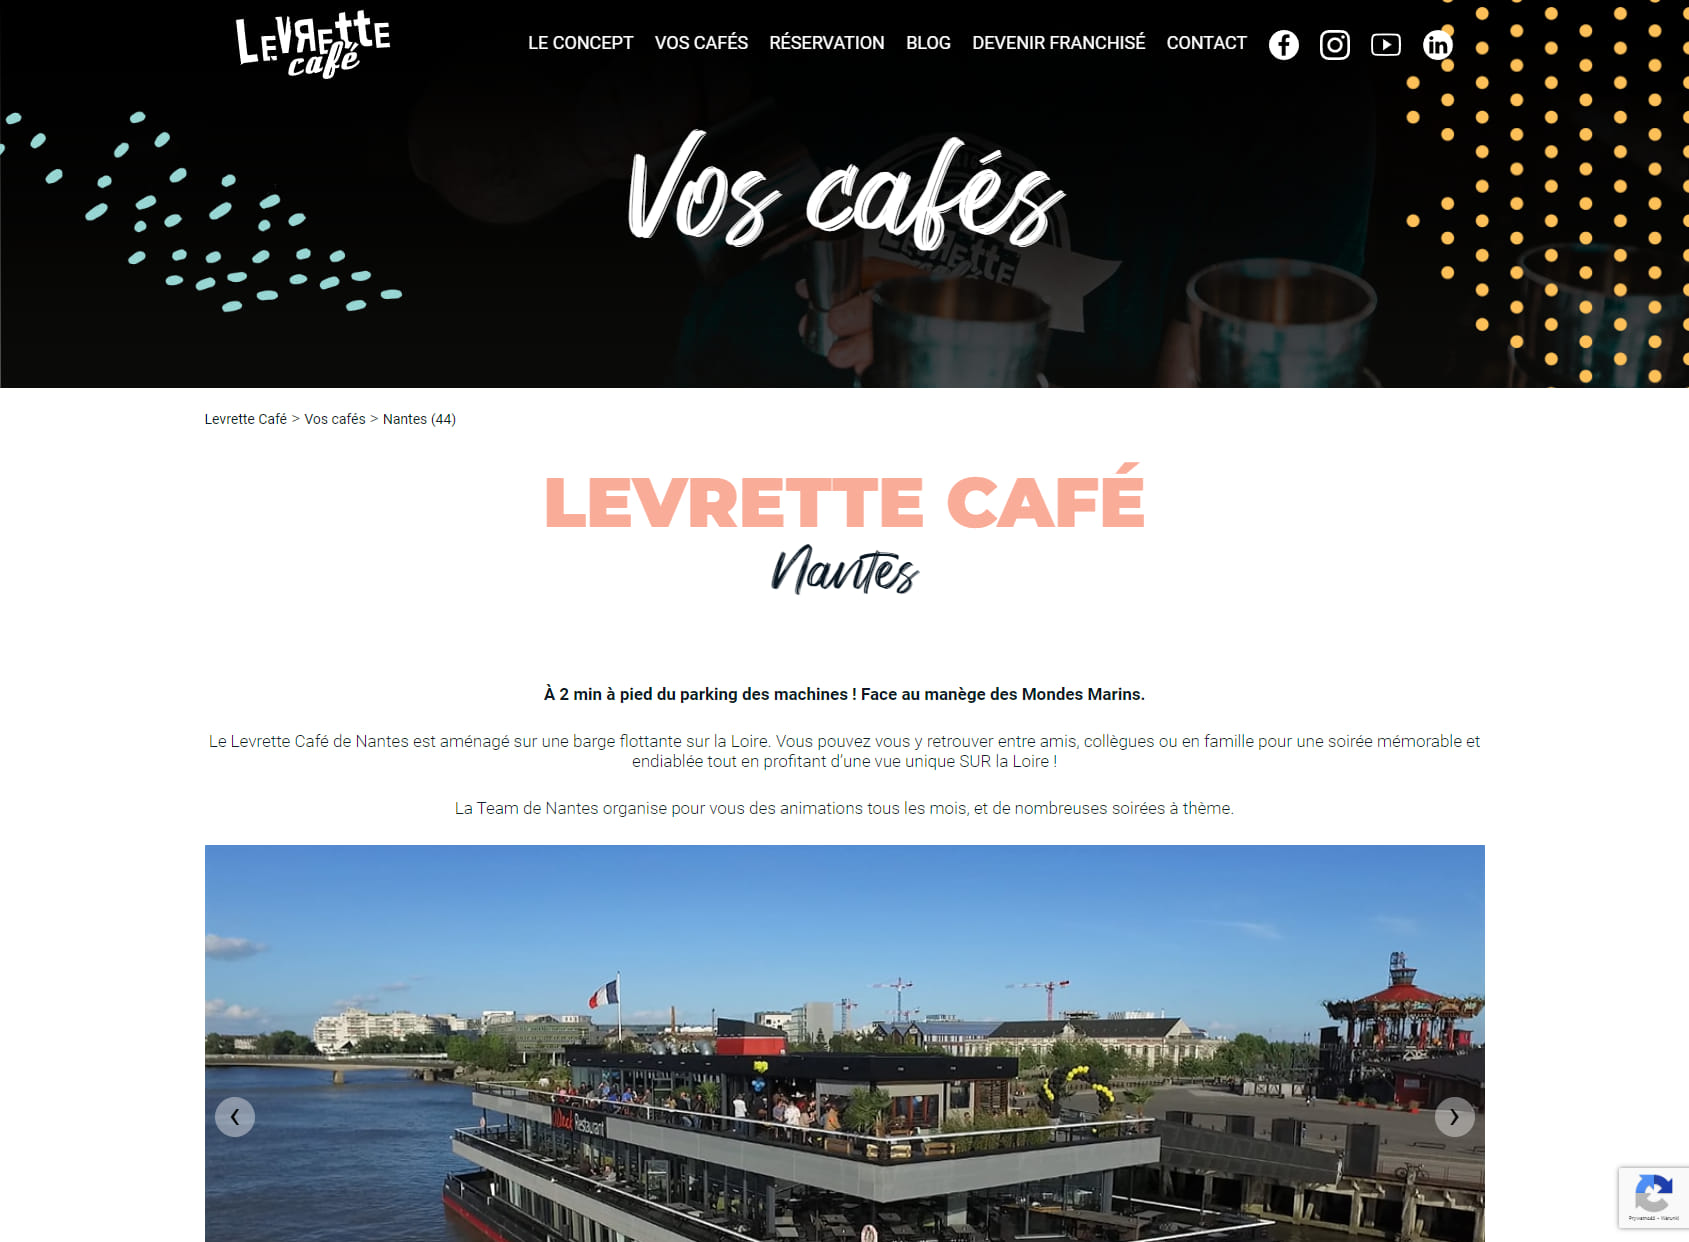 LevЯette Café Nantes